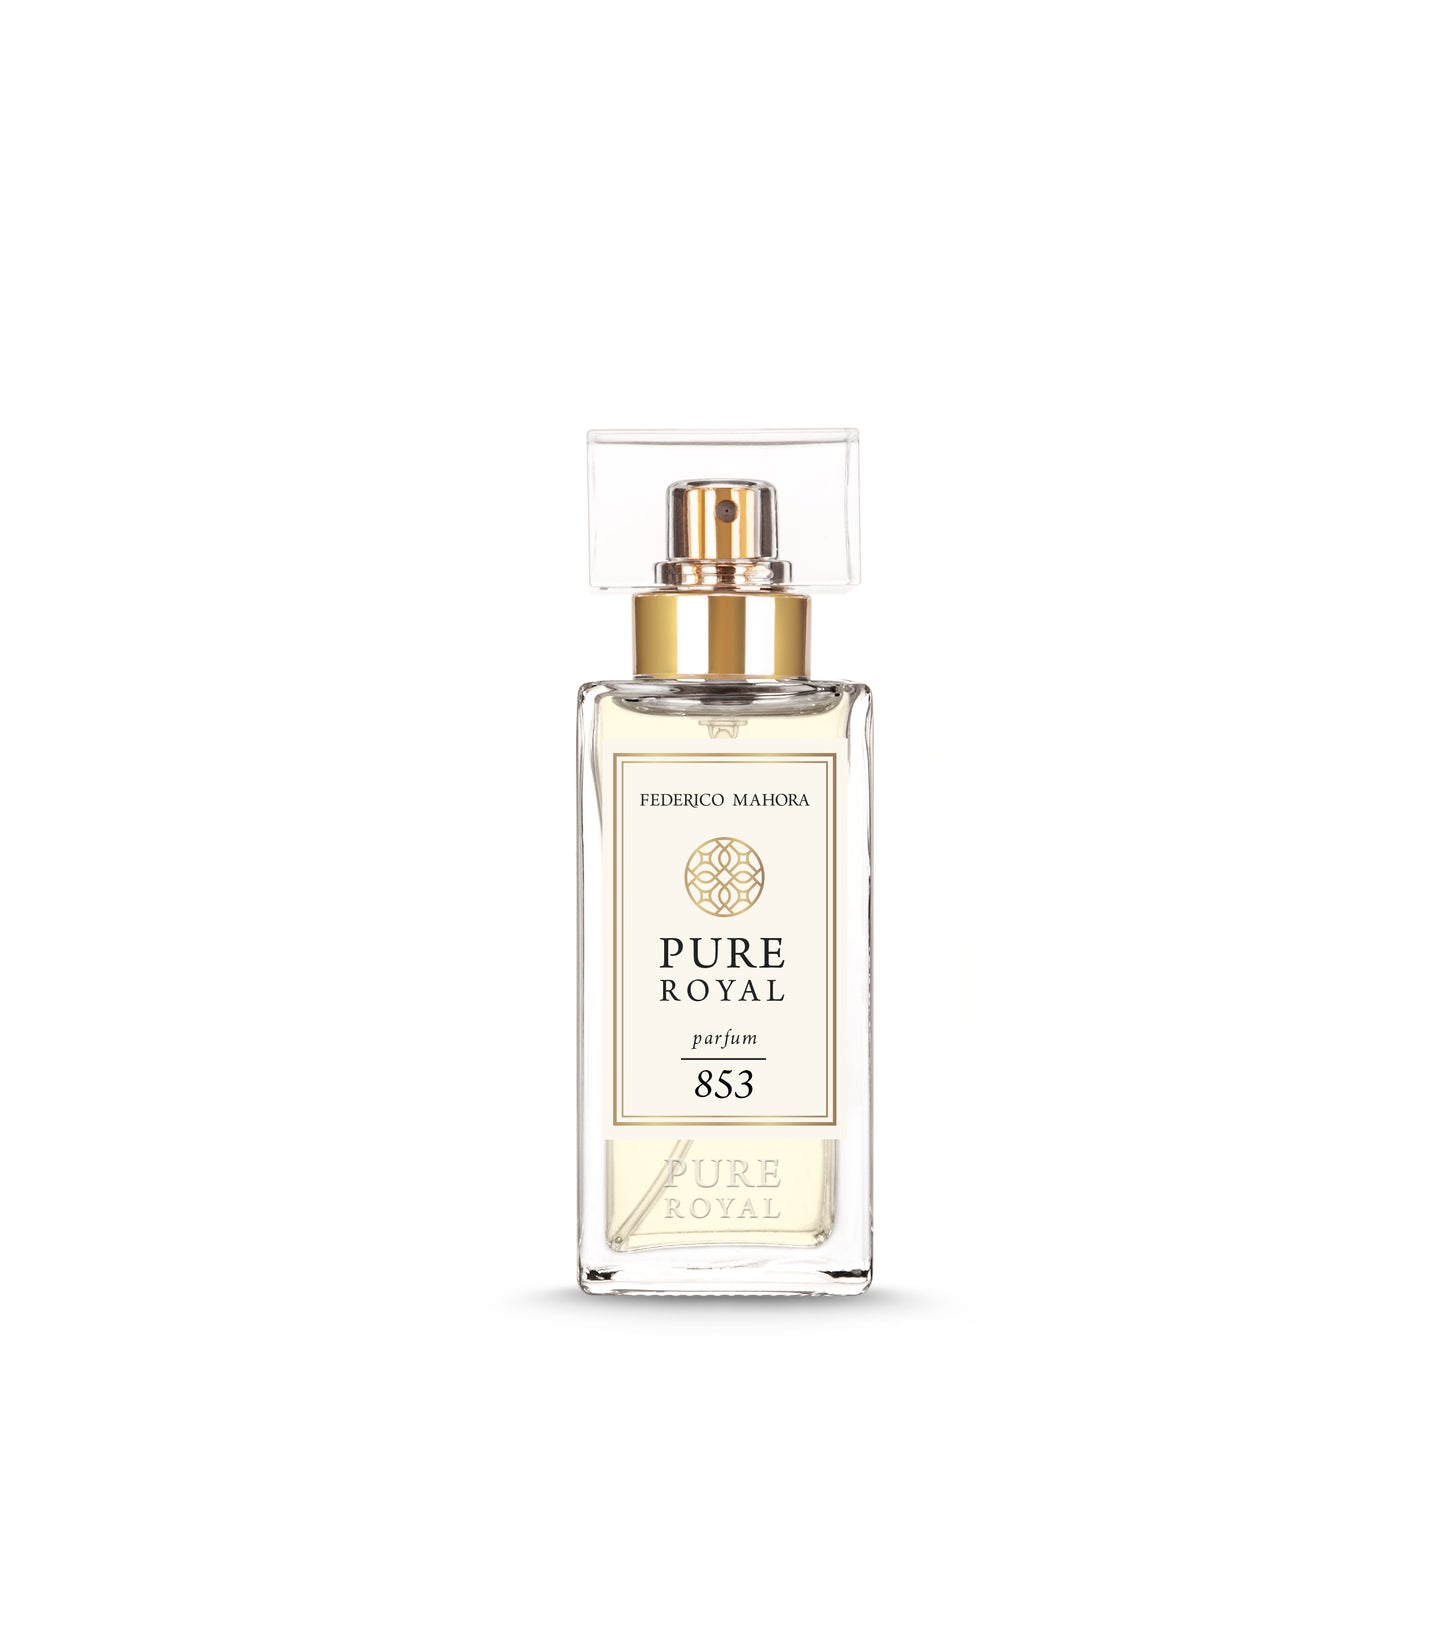 FM Pure Royal parfum 853